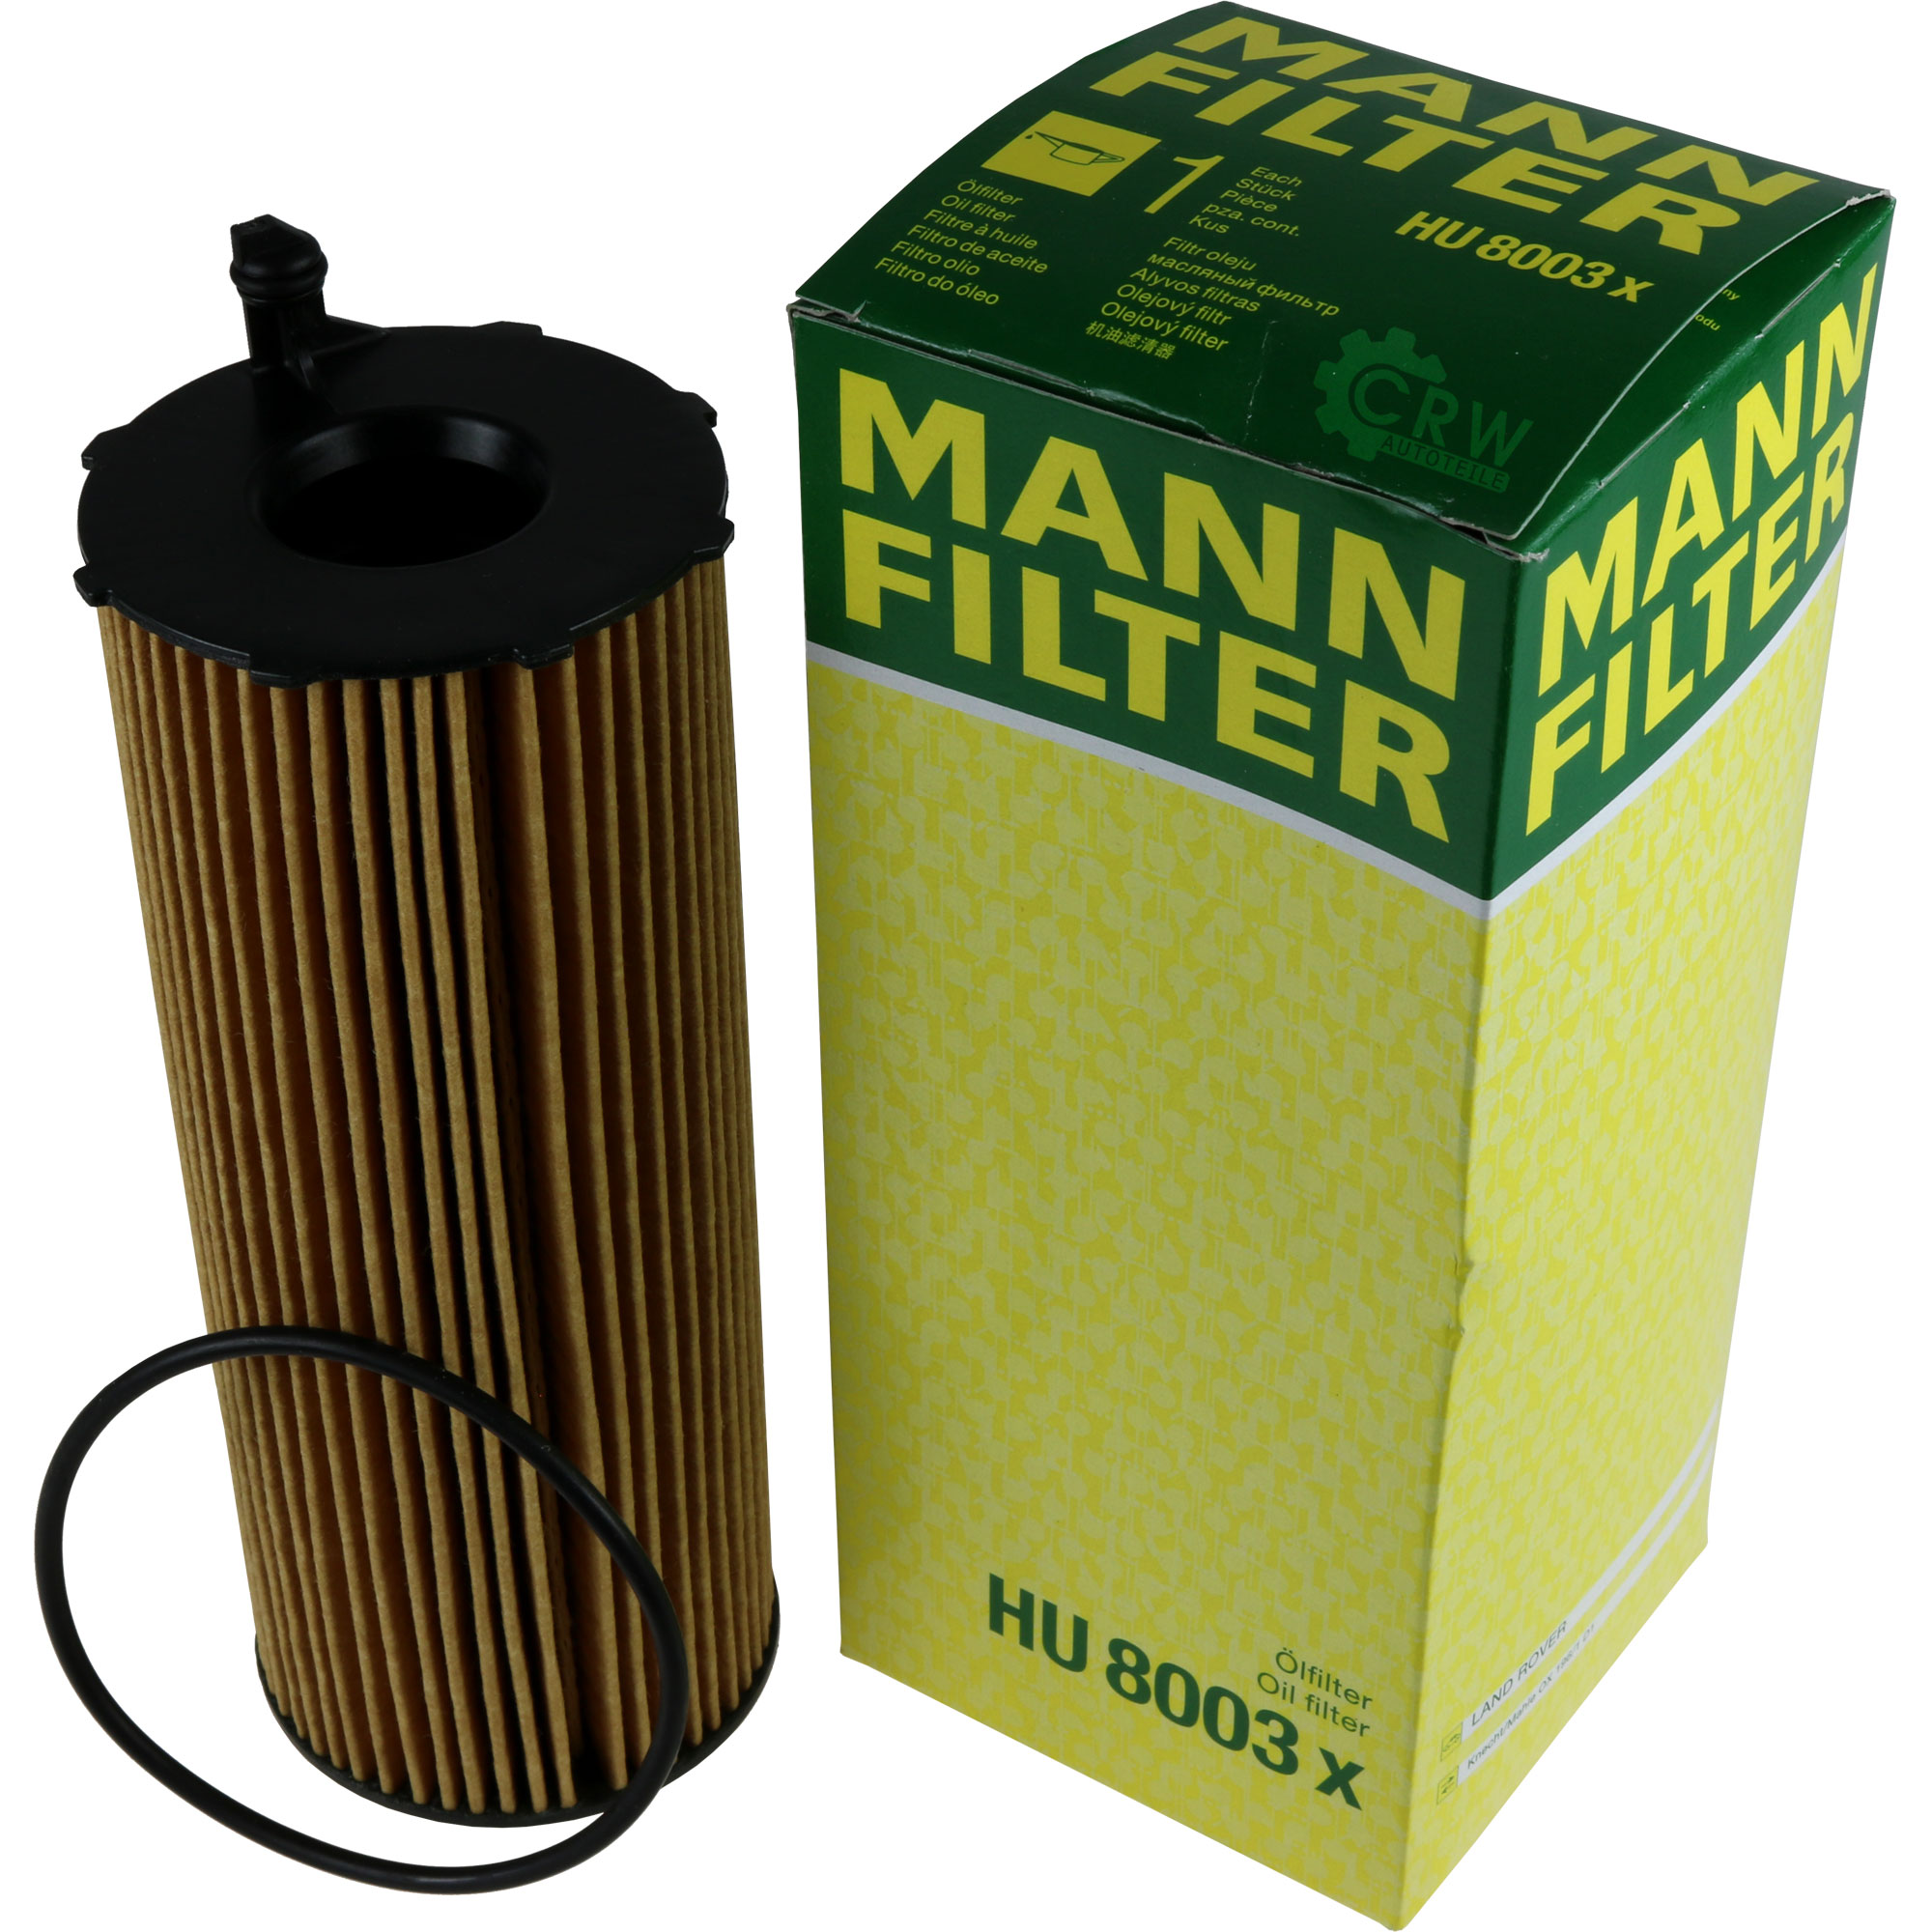 MANN-FILTER Ölfilter HU 8003 x Oil Filter